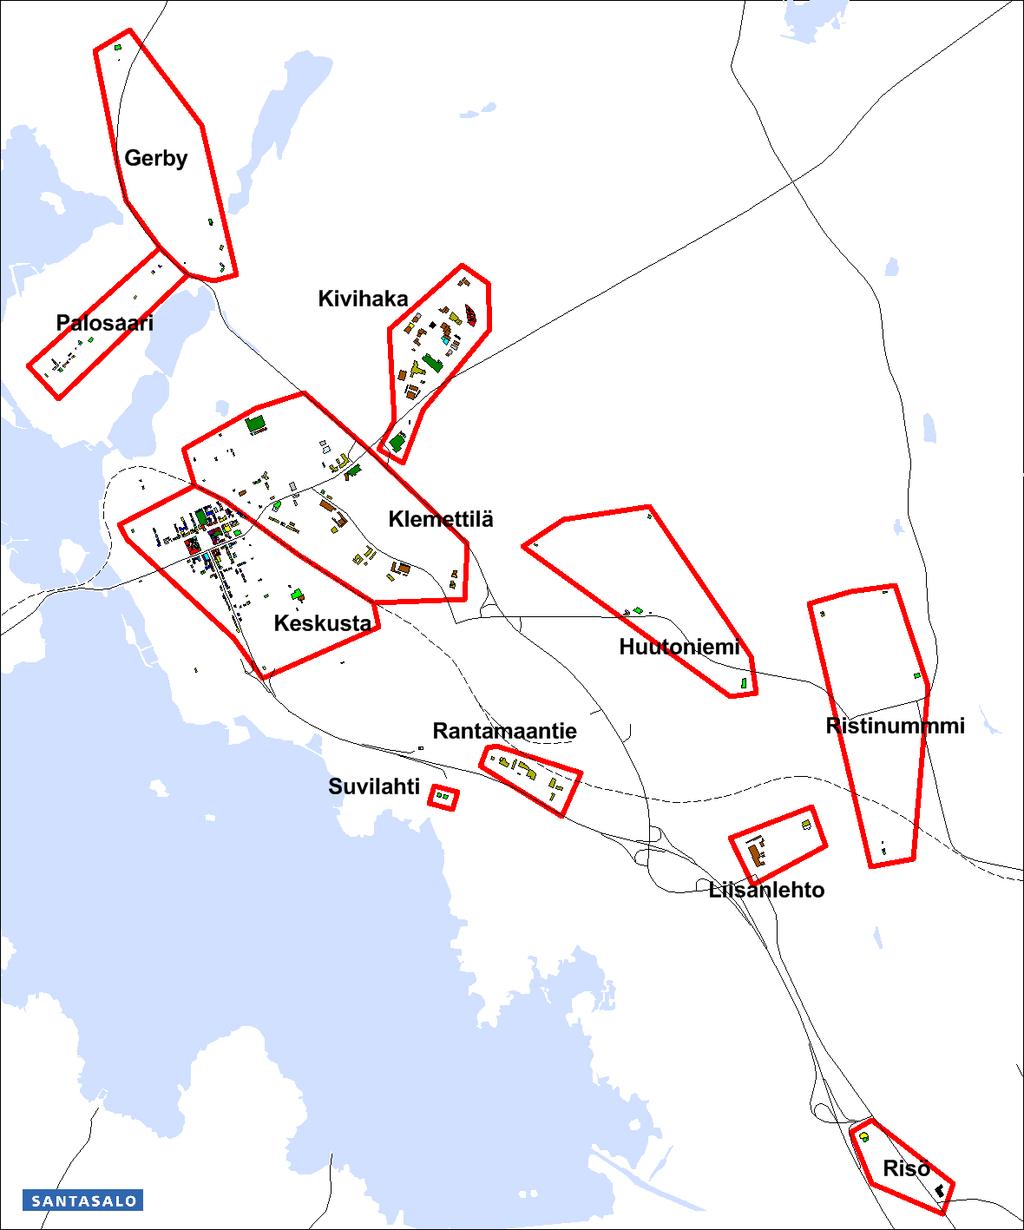 12 Kaupan alueet Vaasassa 2014 (kuvasta puuttuu kartoitetut alueet: Sundom, Vähäkyrö ja Tervajoki) Kaupalliset palvelut ovat Vaasassa keskittyneet useaan keskukseen.